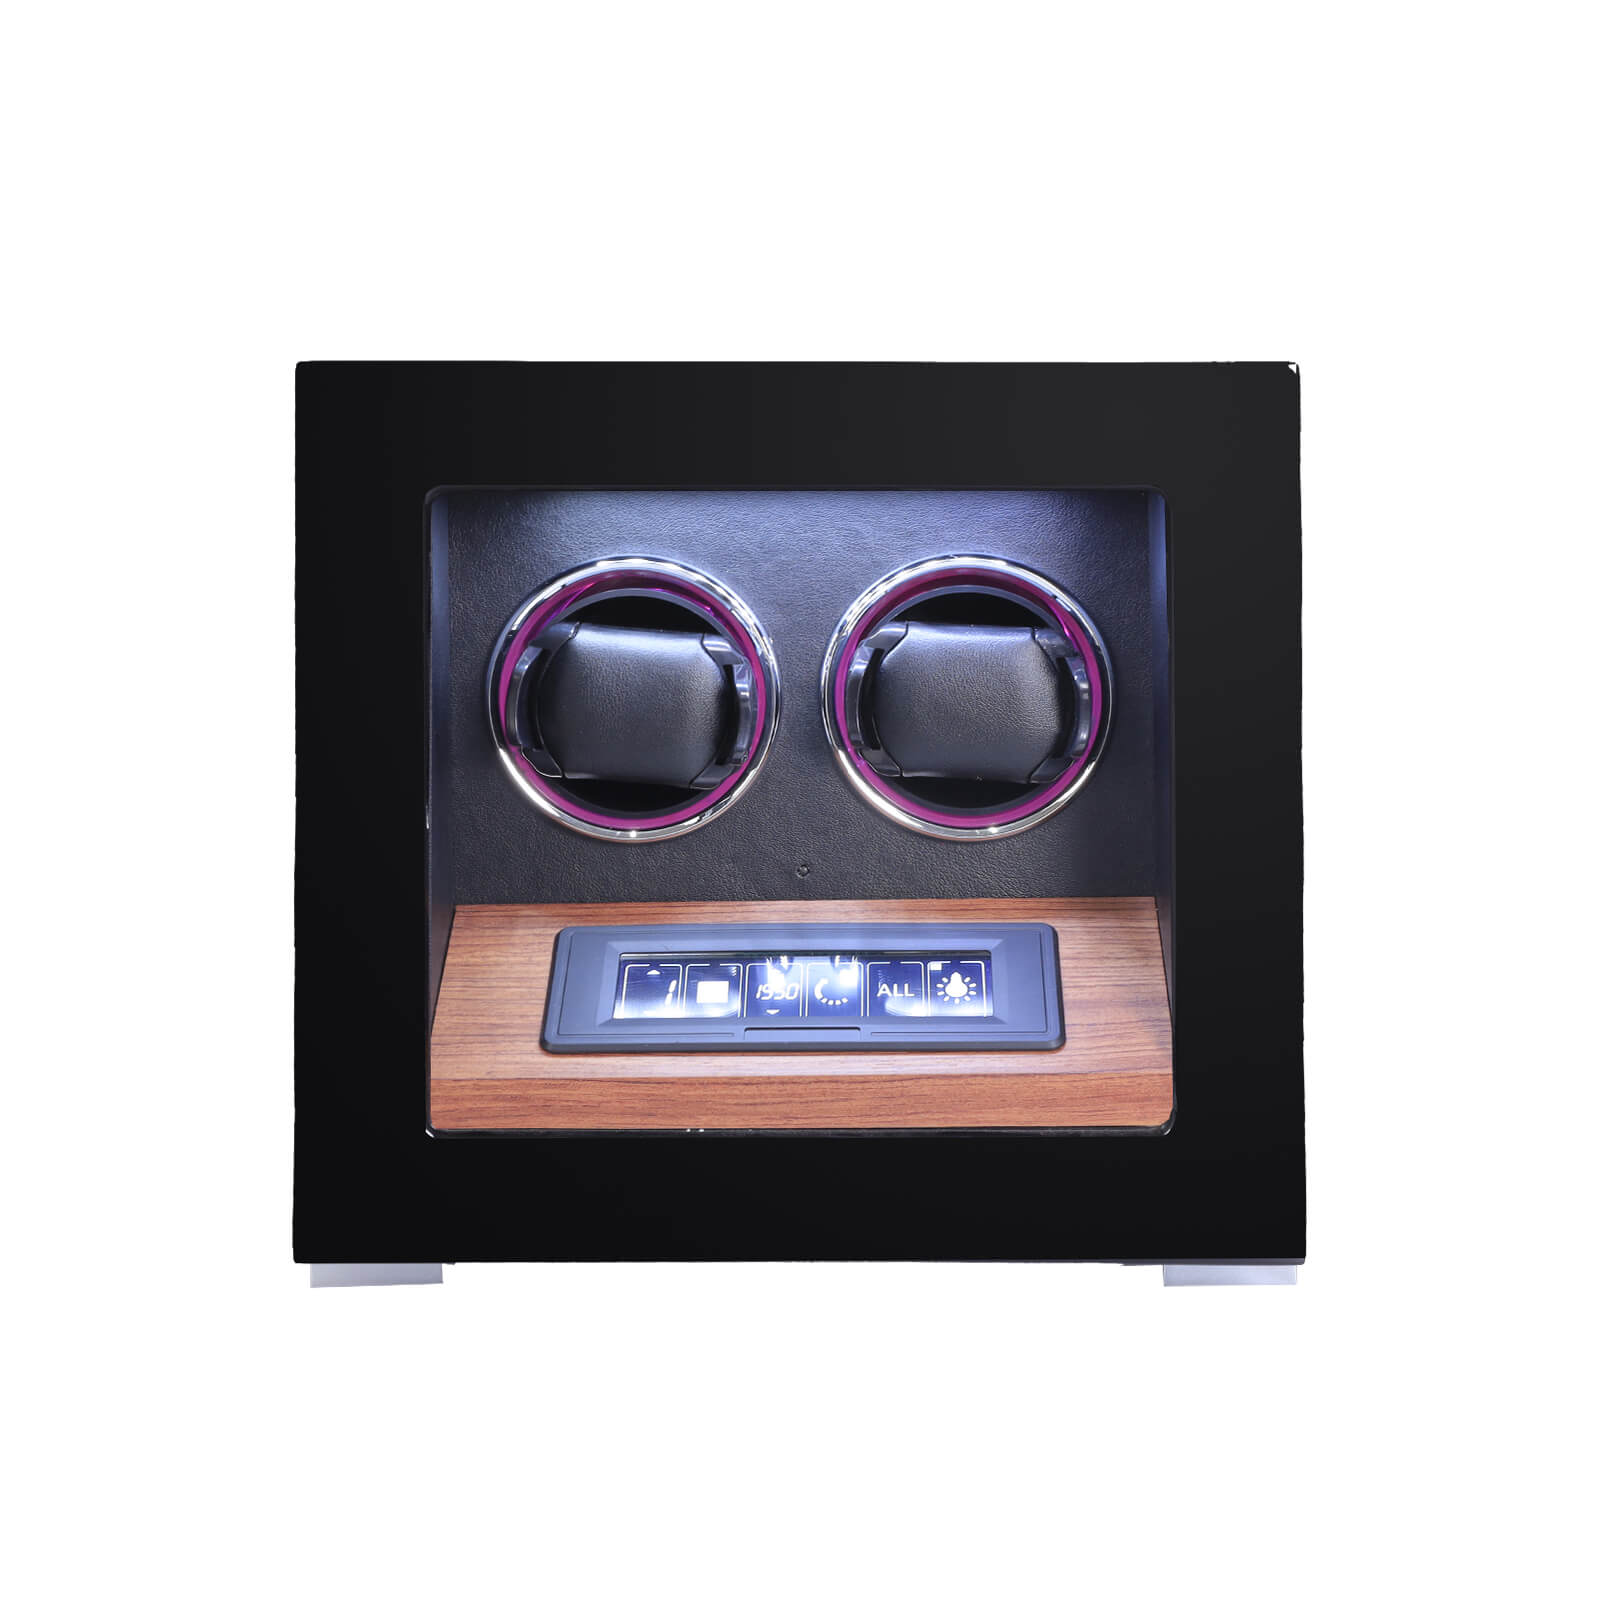 2 Watch Winders with Fingerprint Unlock RGB Atmosphere Lighting